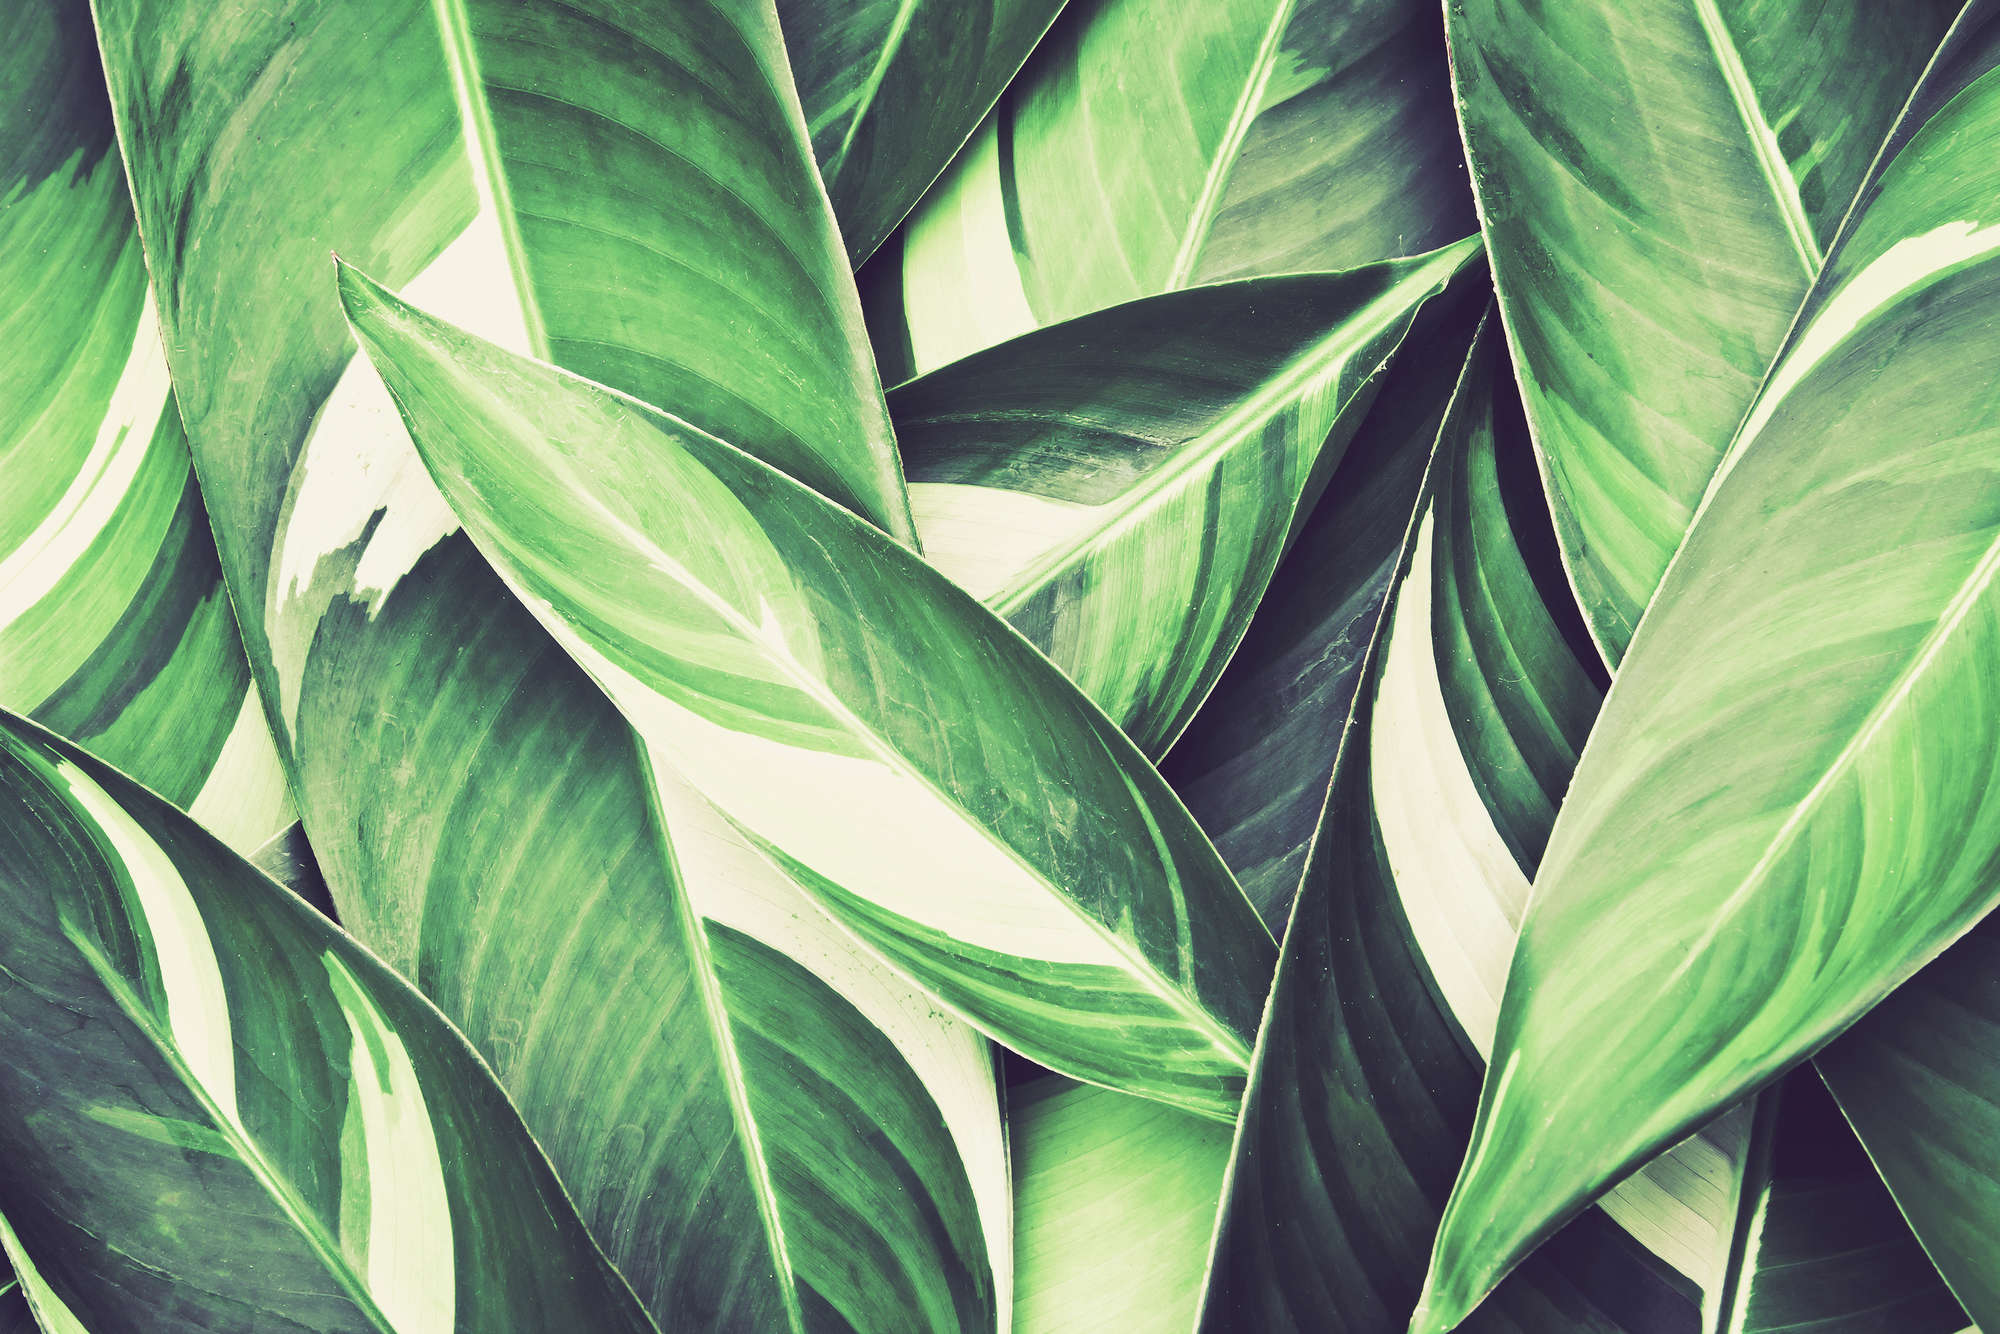             Natuurbehang palmbladeren motief groen op parelmoer glad vlies
        